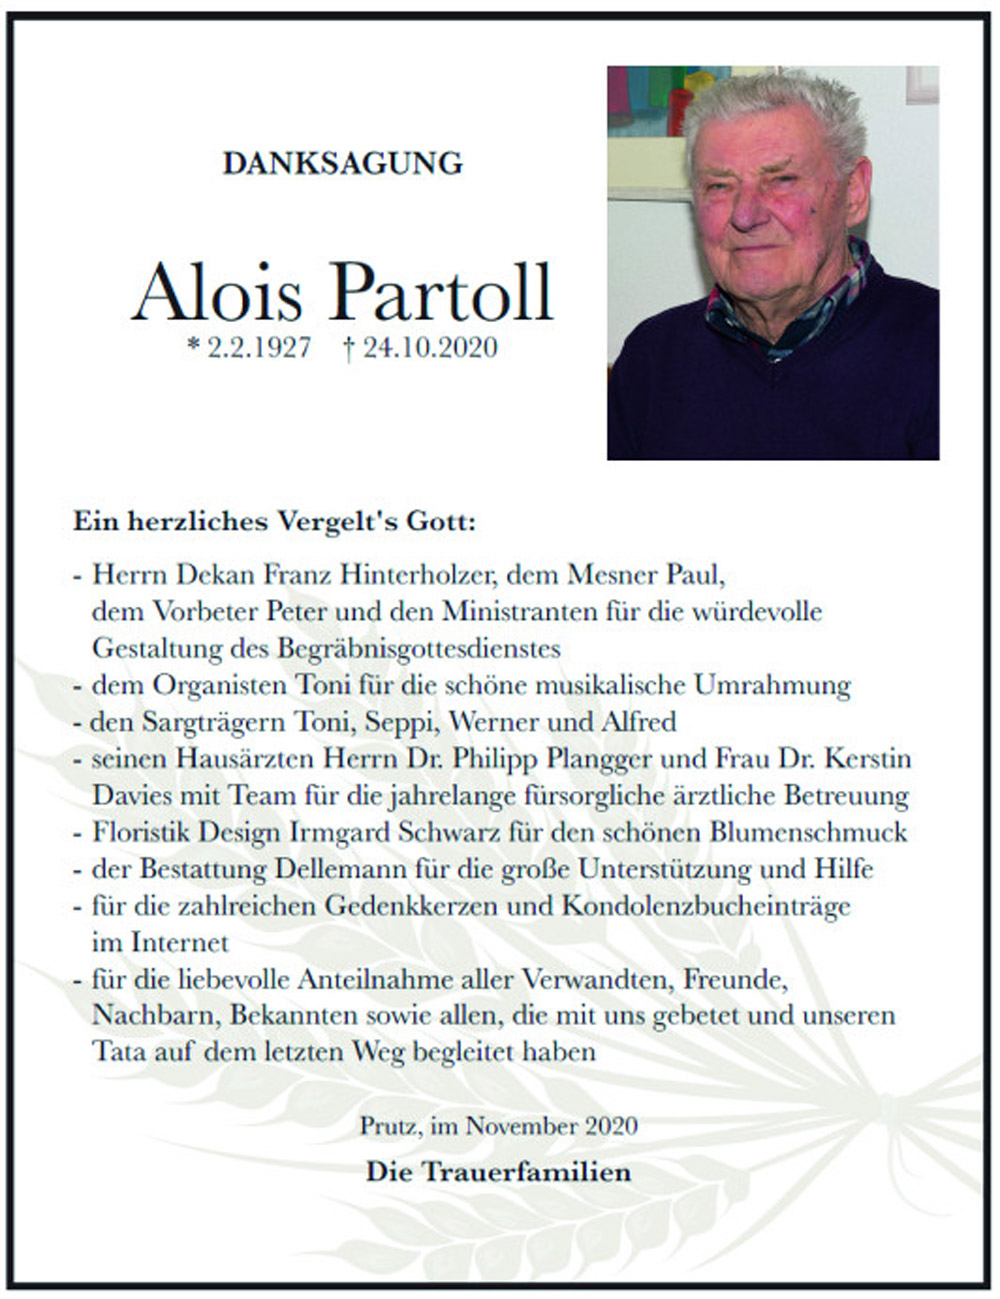 Alois Partoll 